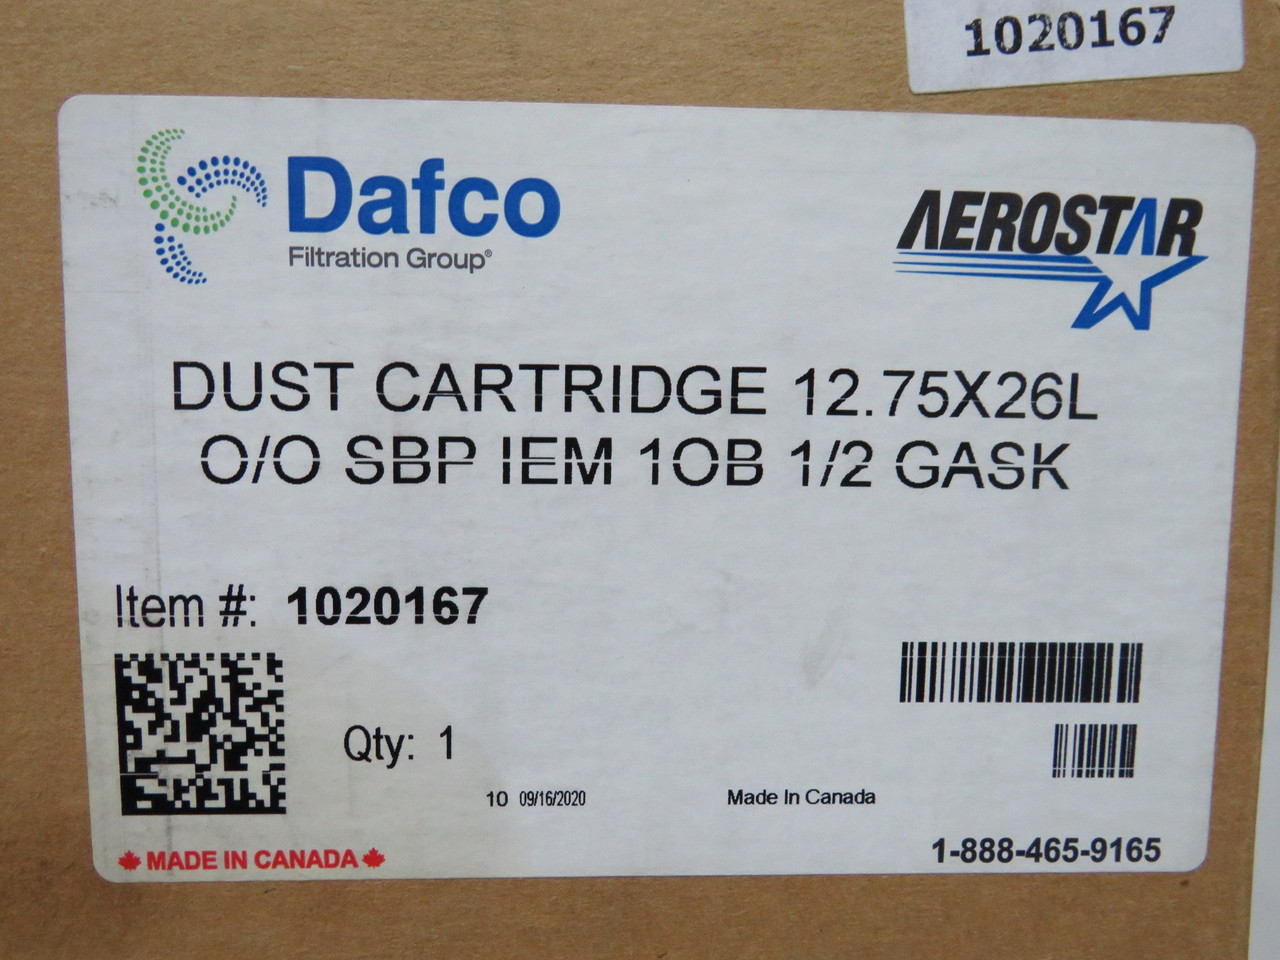 Dafco 1020167 Dust Cartridge 12.75 x 26L O/O SBP IEM 1OB 1/2 Gasket NEW